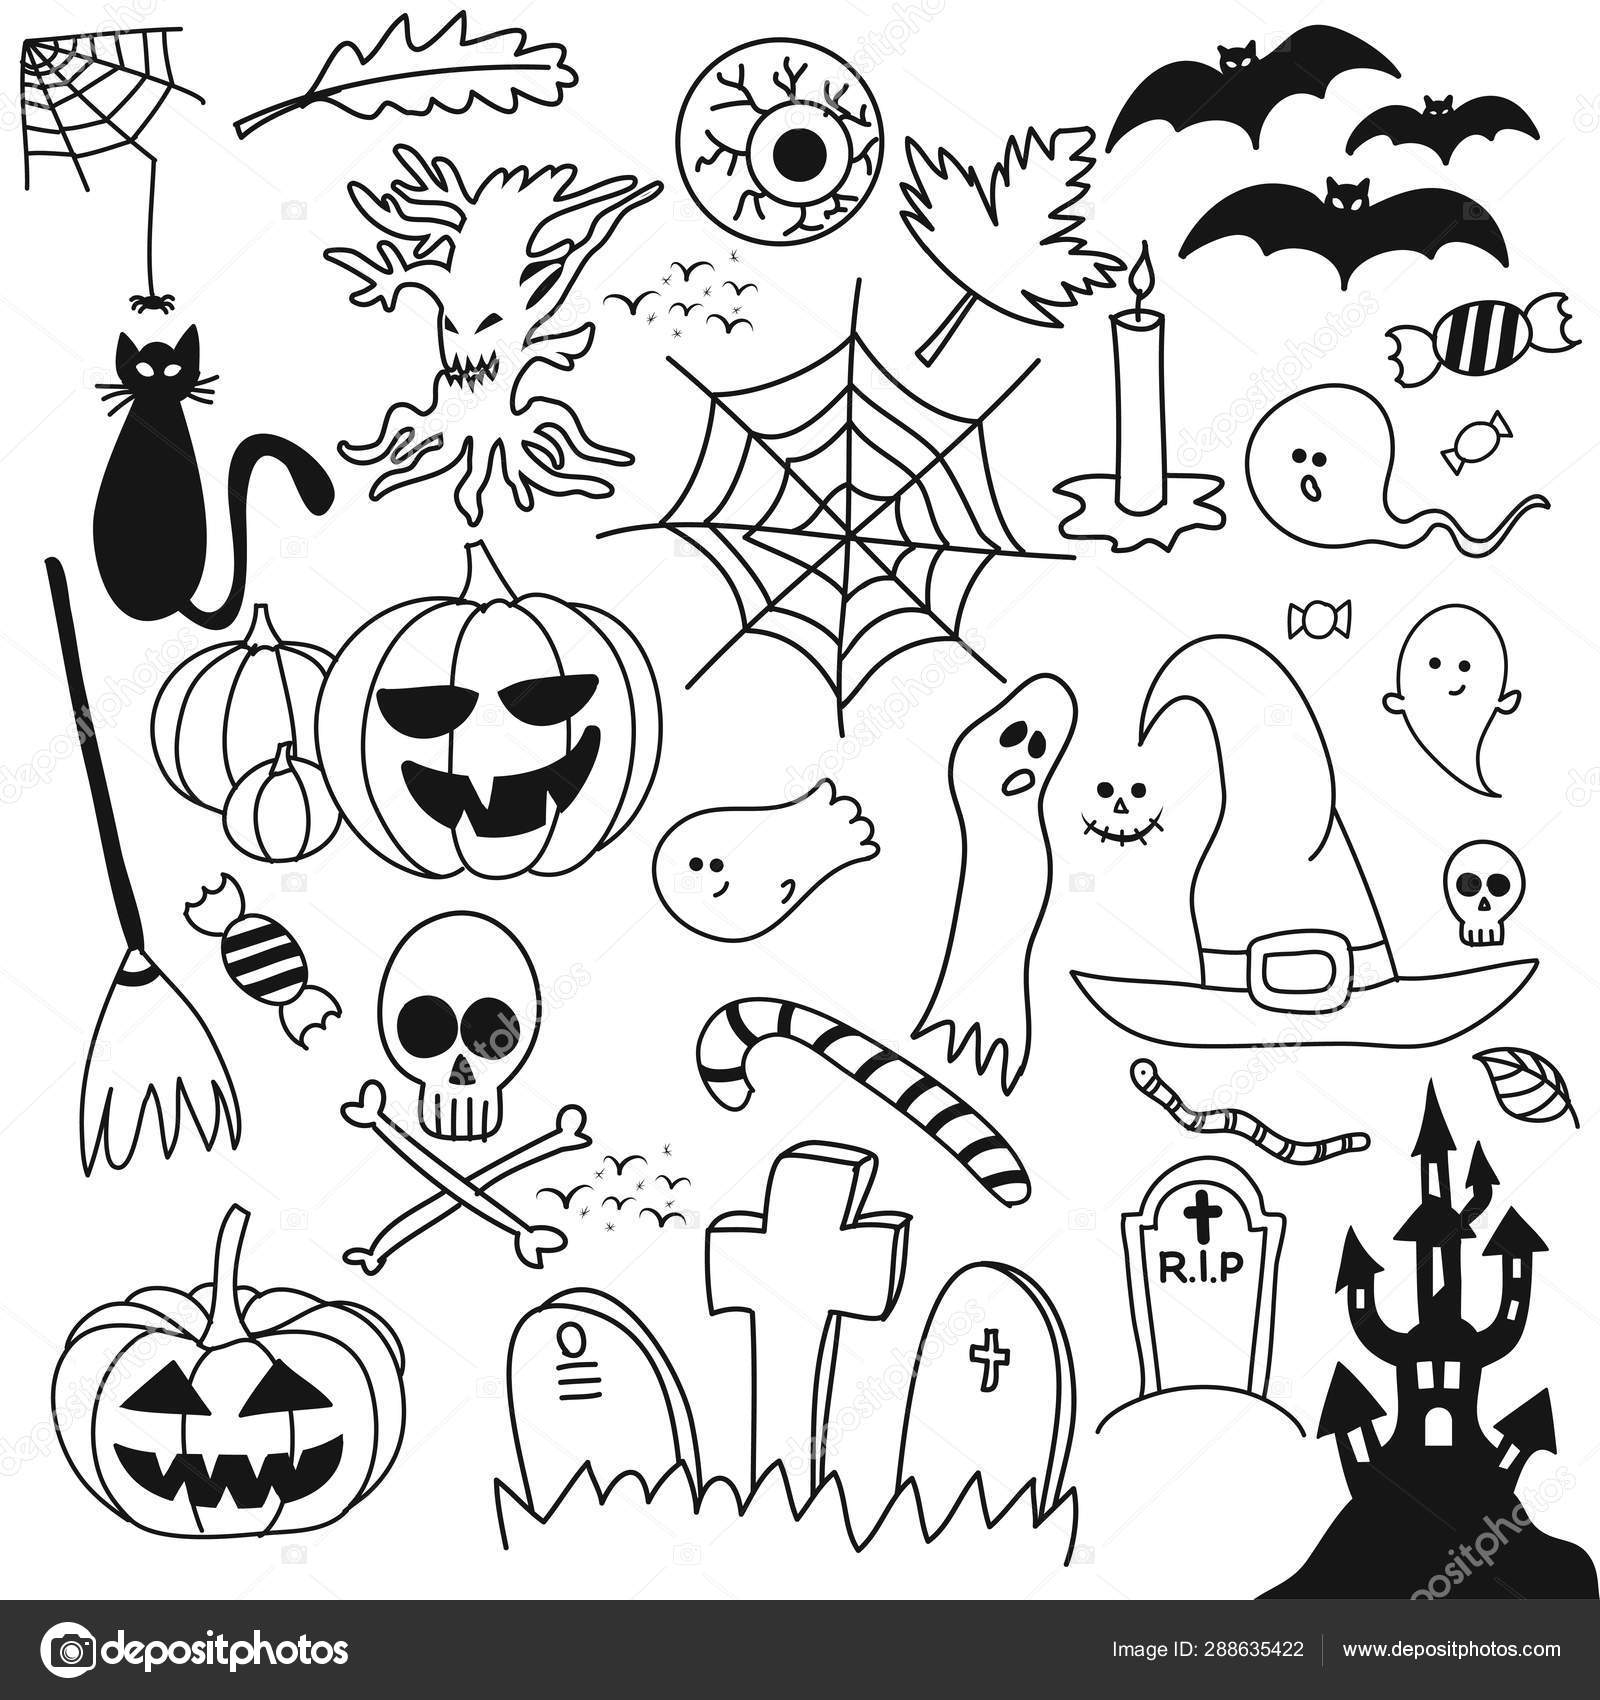 Escoba de bruja elementos de halloween concepto de truco o trato  ilustración vectorial en estilo dibujado a mano